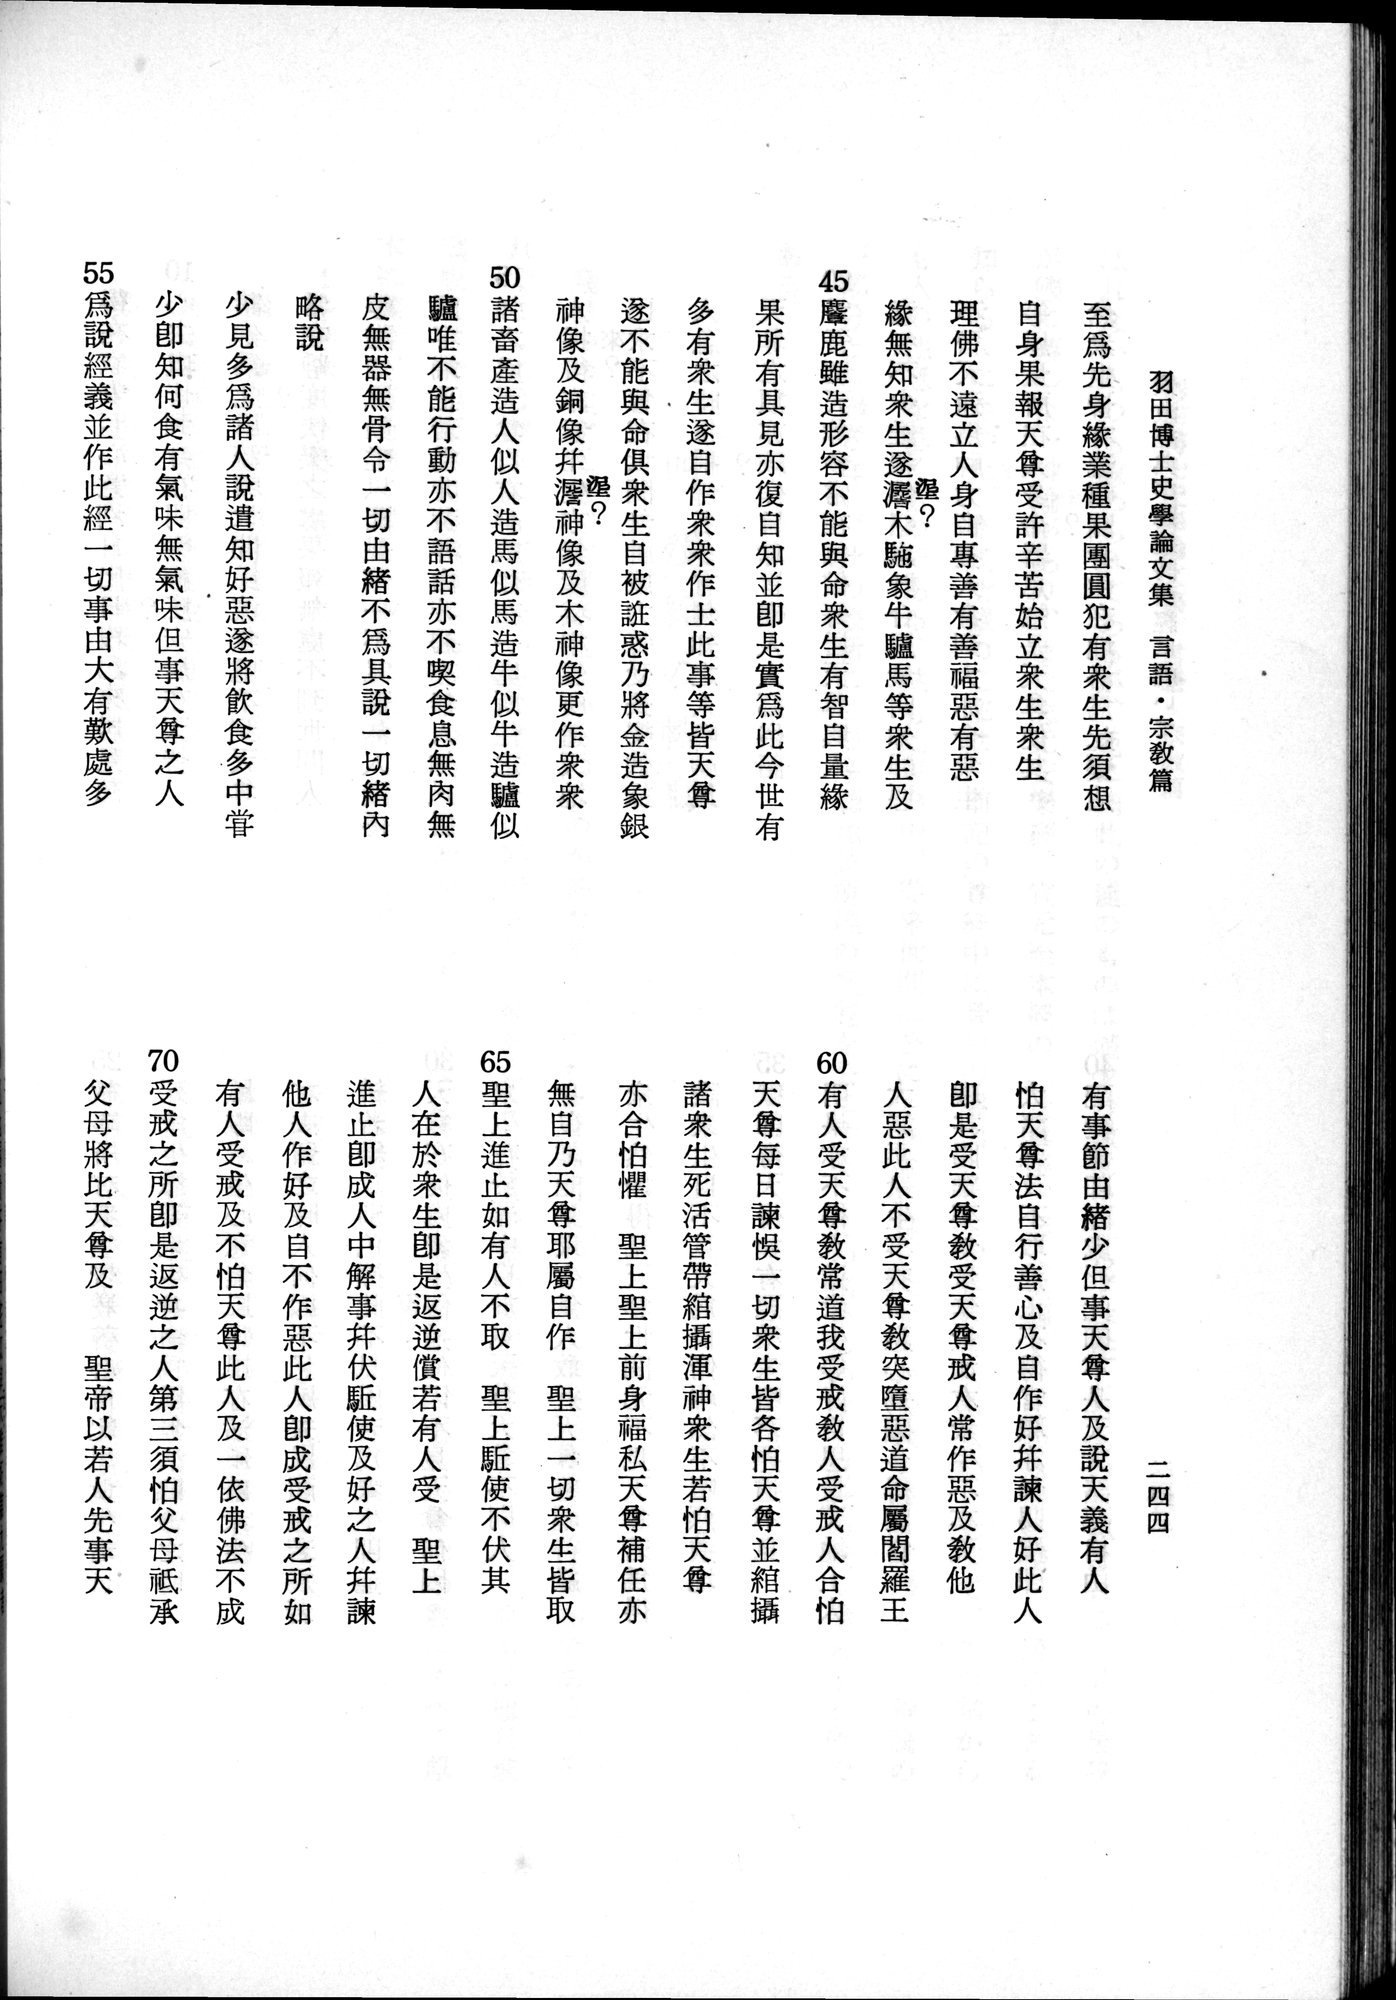 羽田博士史学論文集 : vol.2 / 306 ページ（白黒高解像度画像）